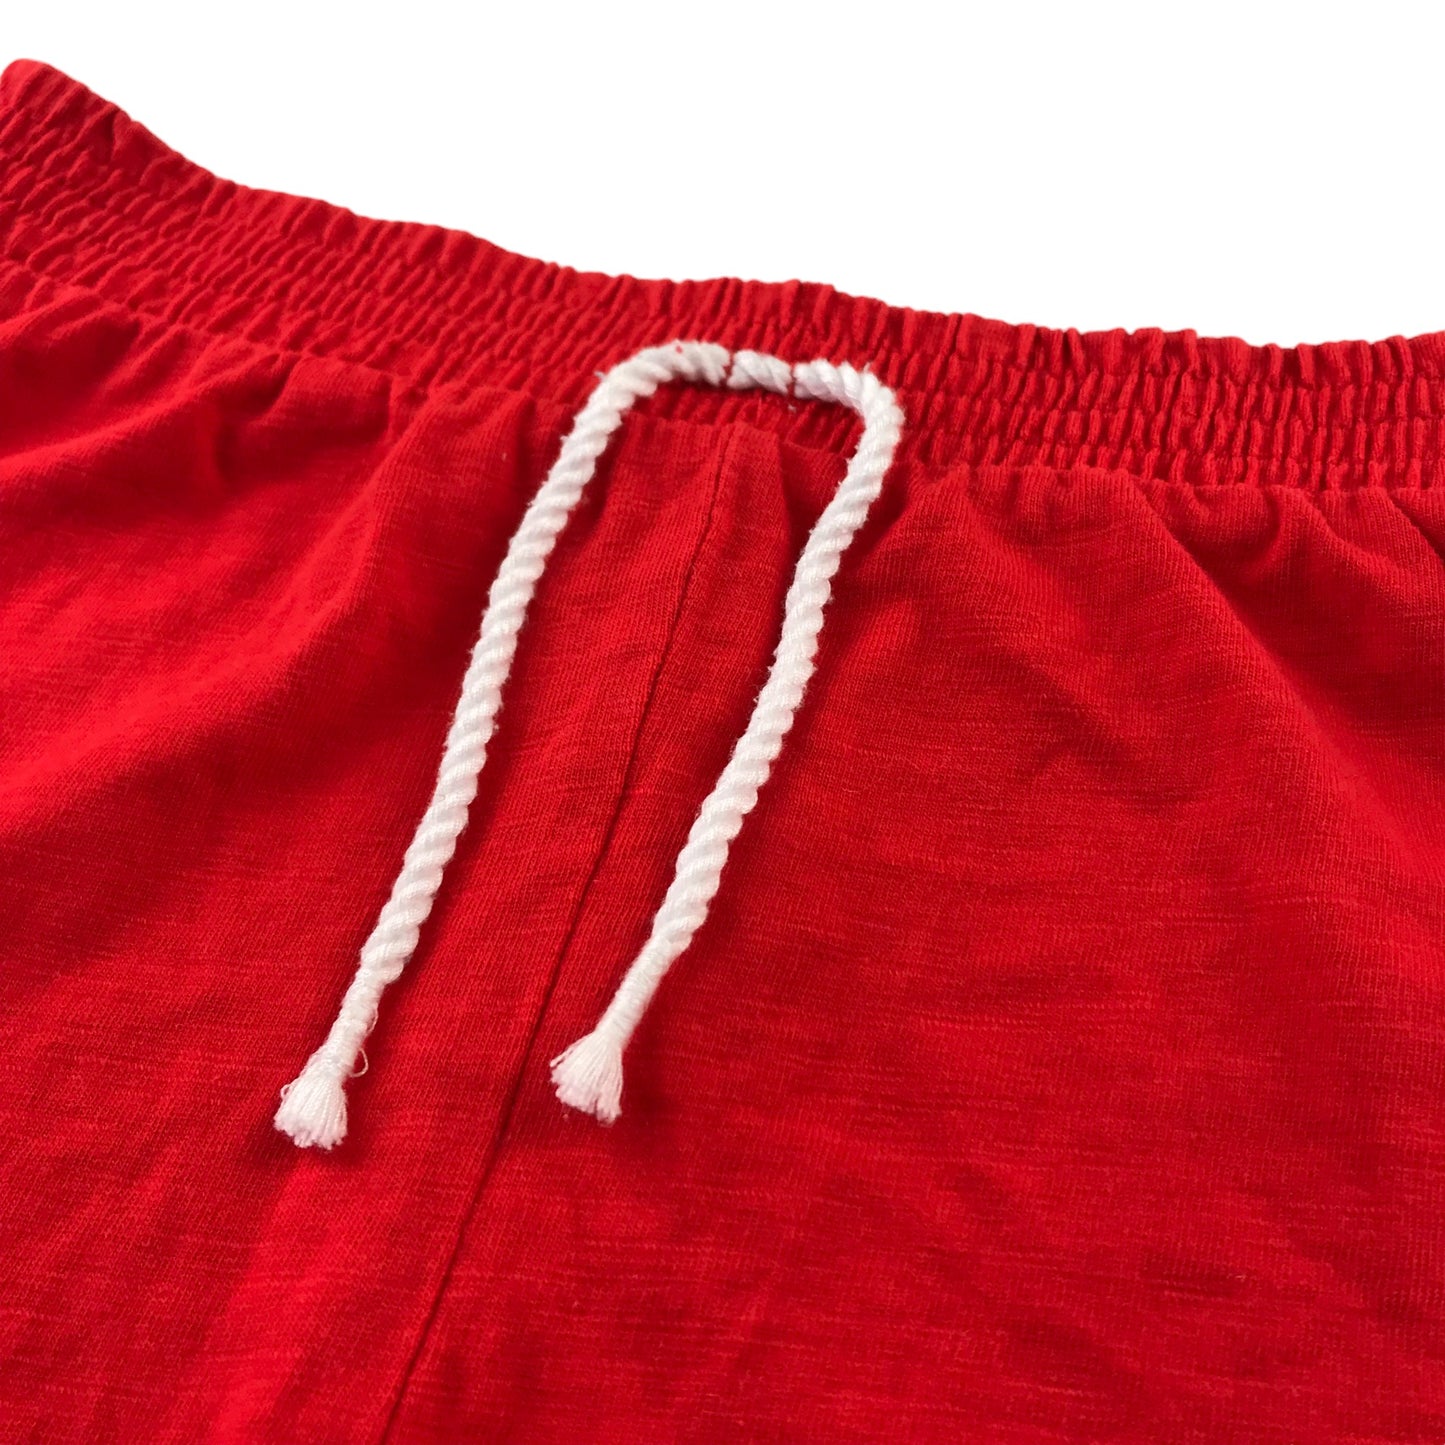 Tu Shorts Set Age 8 Multicolour Bundle Jersey Cotton